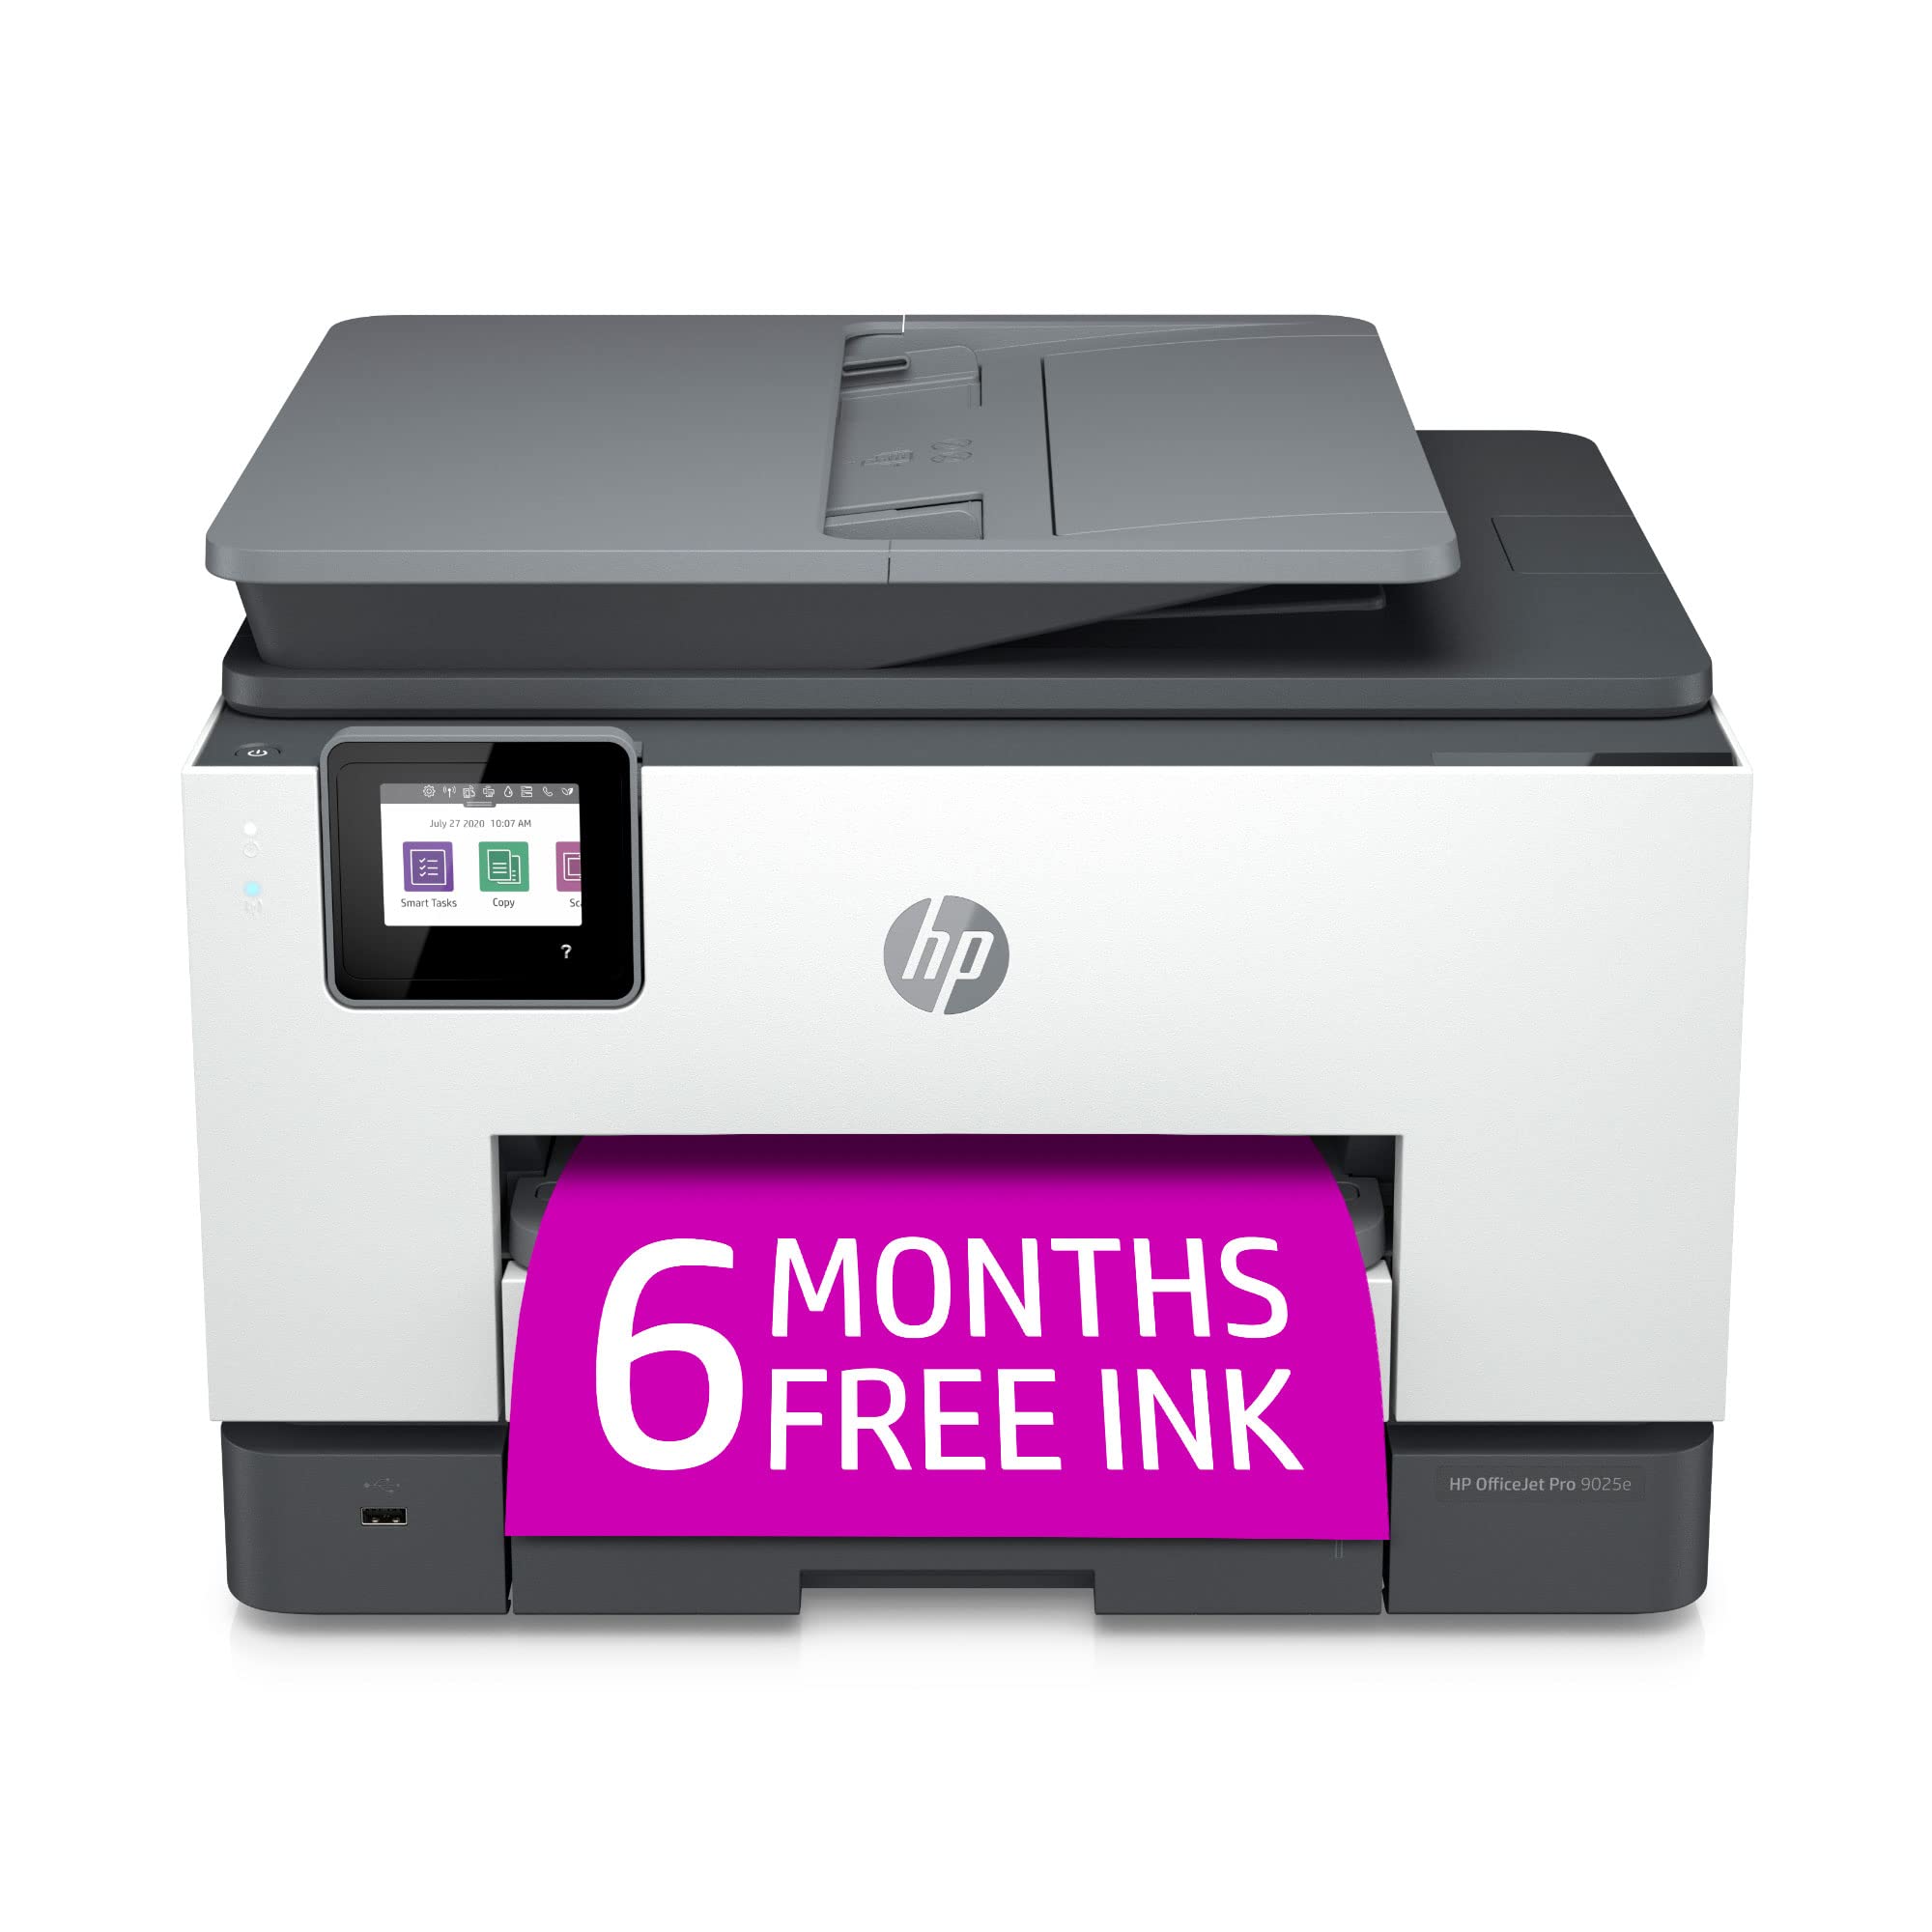 HP Impresora multifunción en color inalámbrica OfficeJet Pro 9025e con tinta instantánea adicional de 6 meses con +